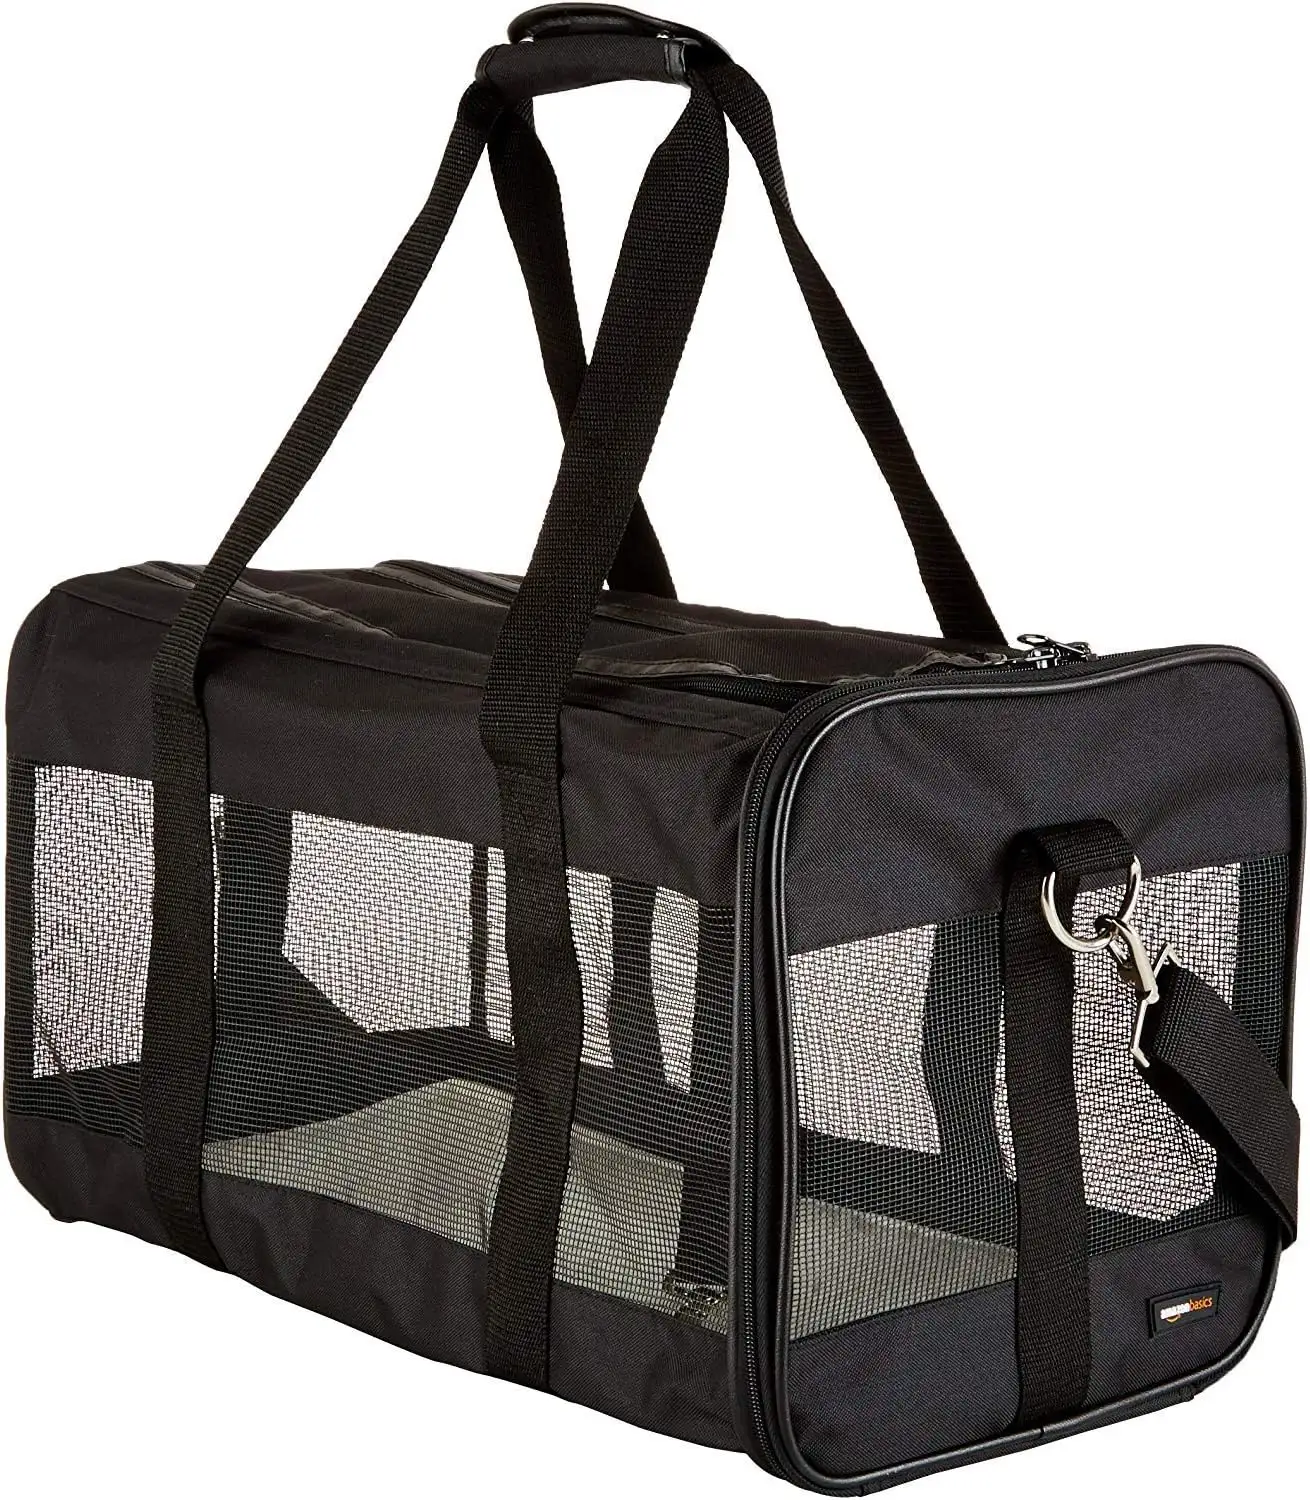 Nouvelle tendance en plein air Style Oxford Pet Carrier respirant compagnie aérienne approuvé chat chien voyage sac à dos Nylon PU sac fourre-tout mallette de rangement